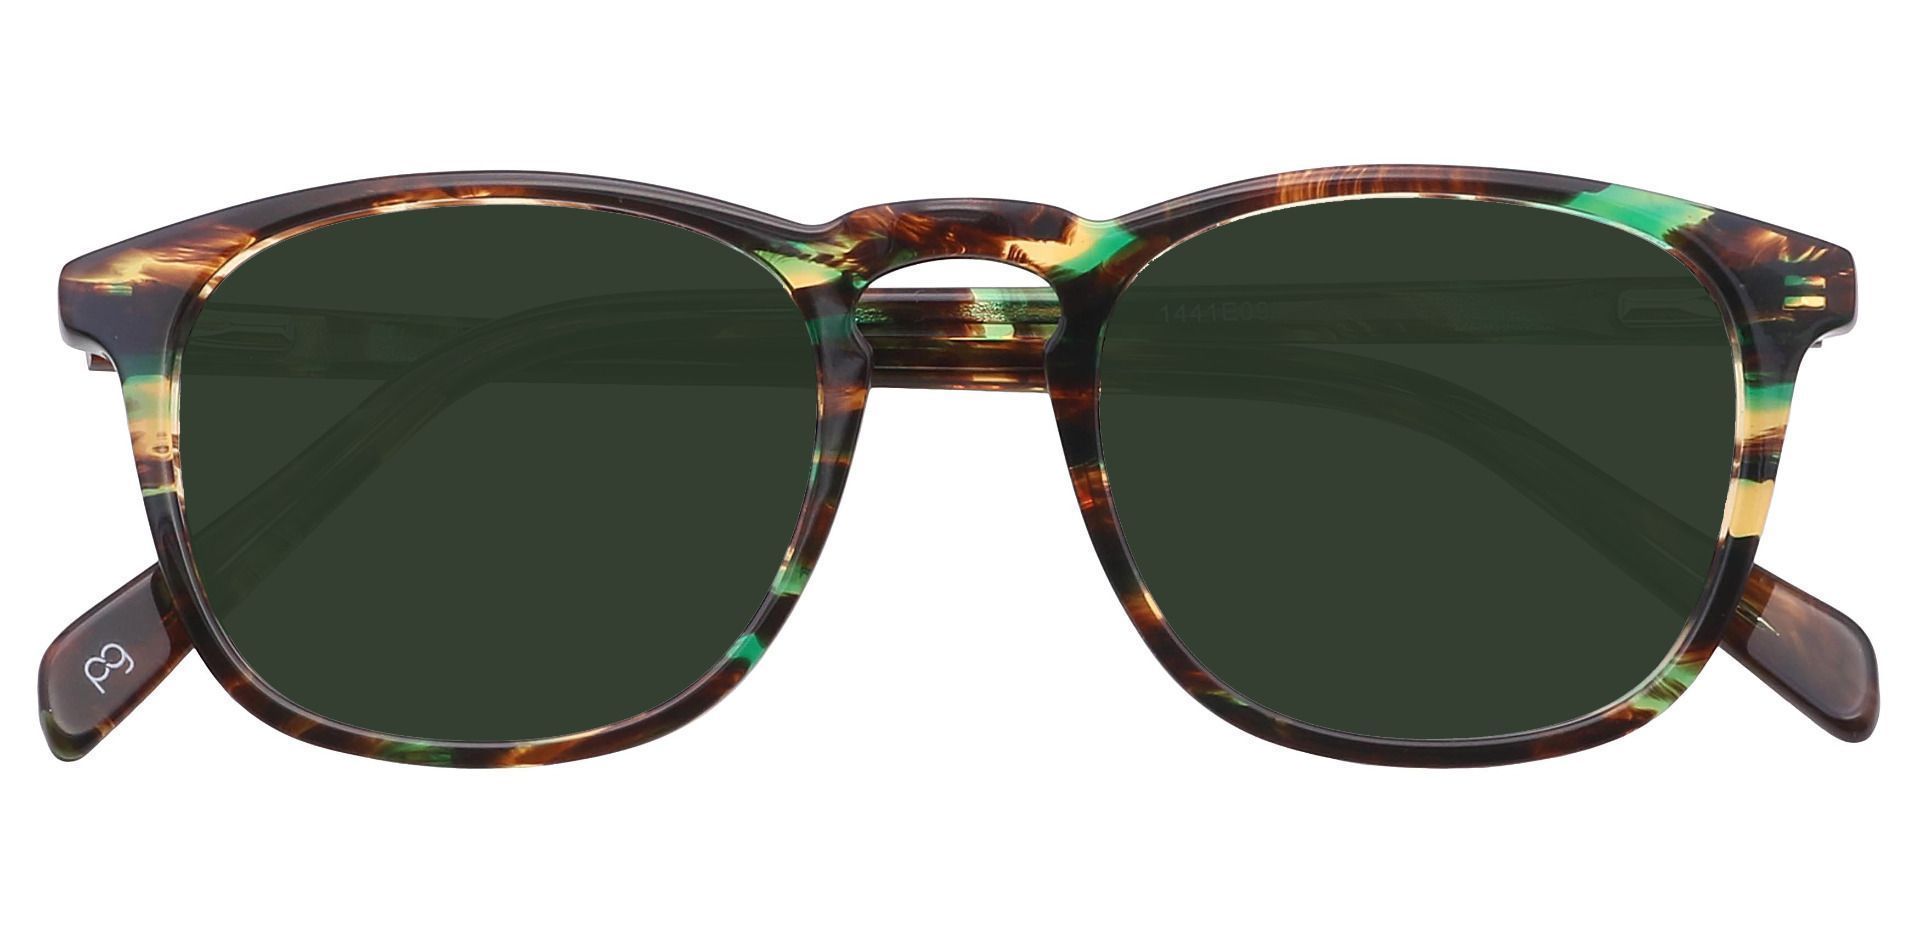 Venti Square Non-Rx Sunglasses - Green Frame With Green Lenses